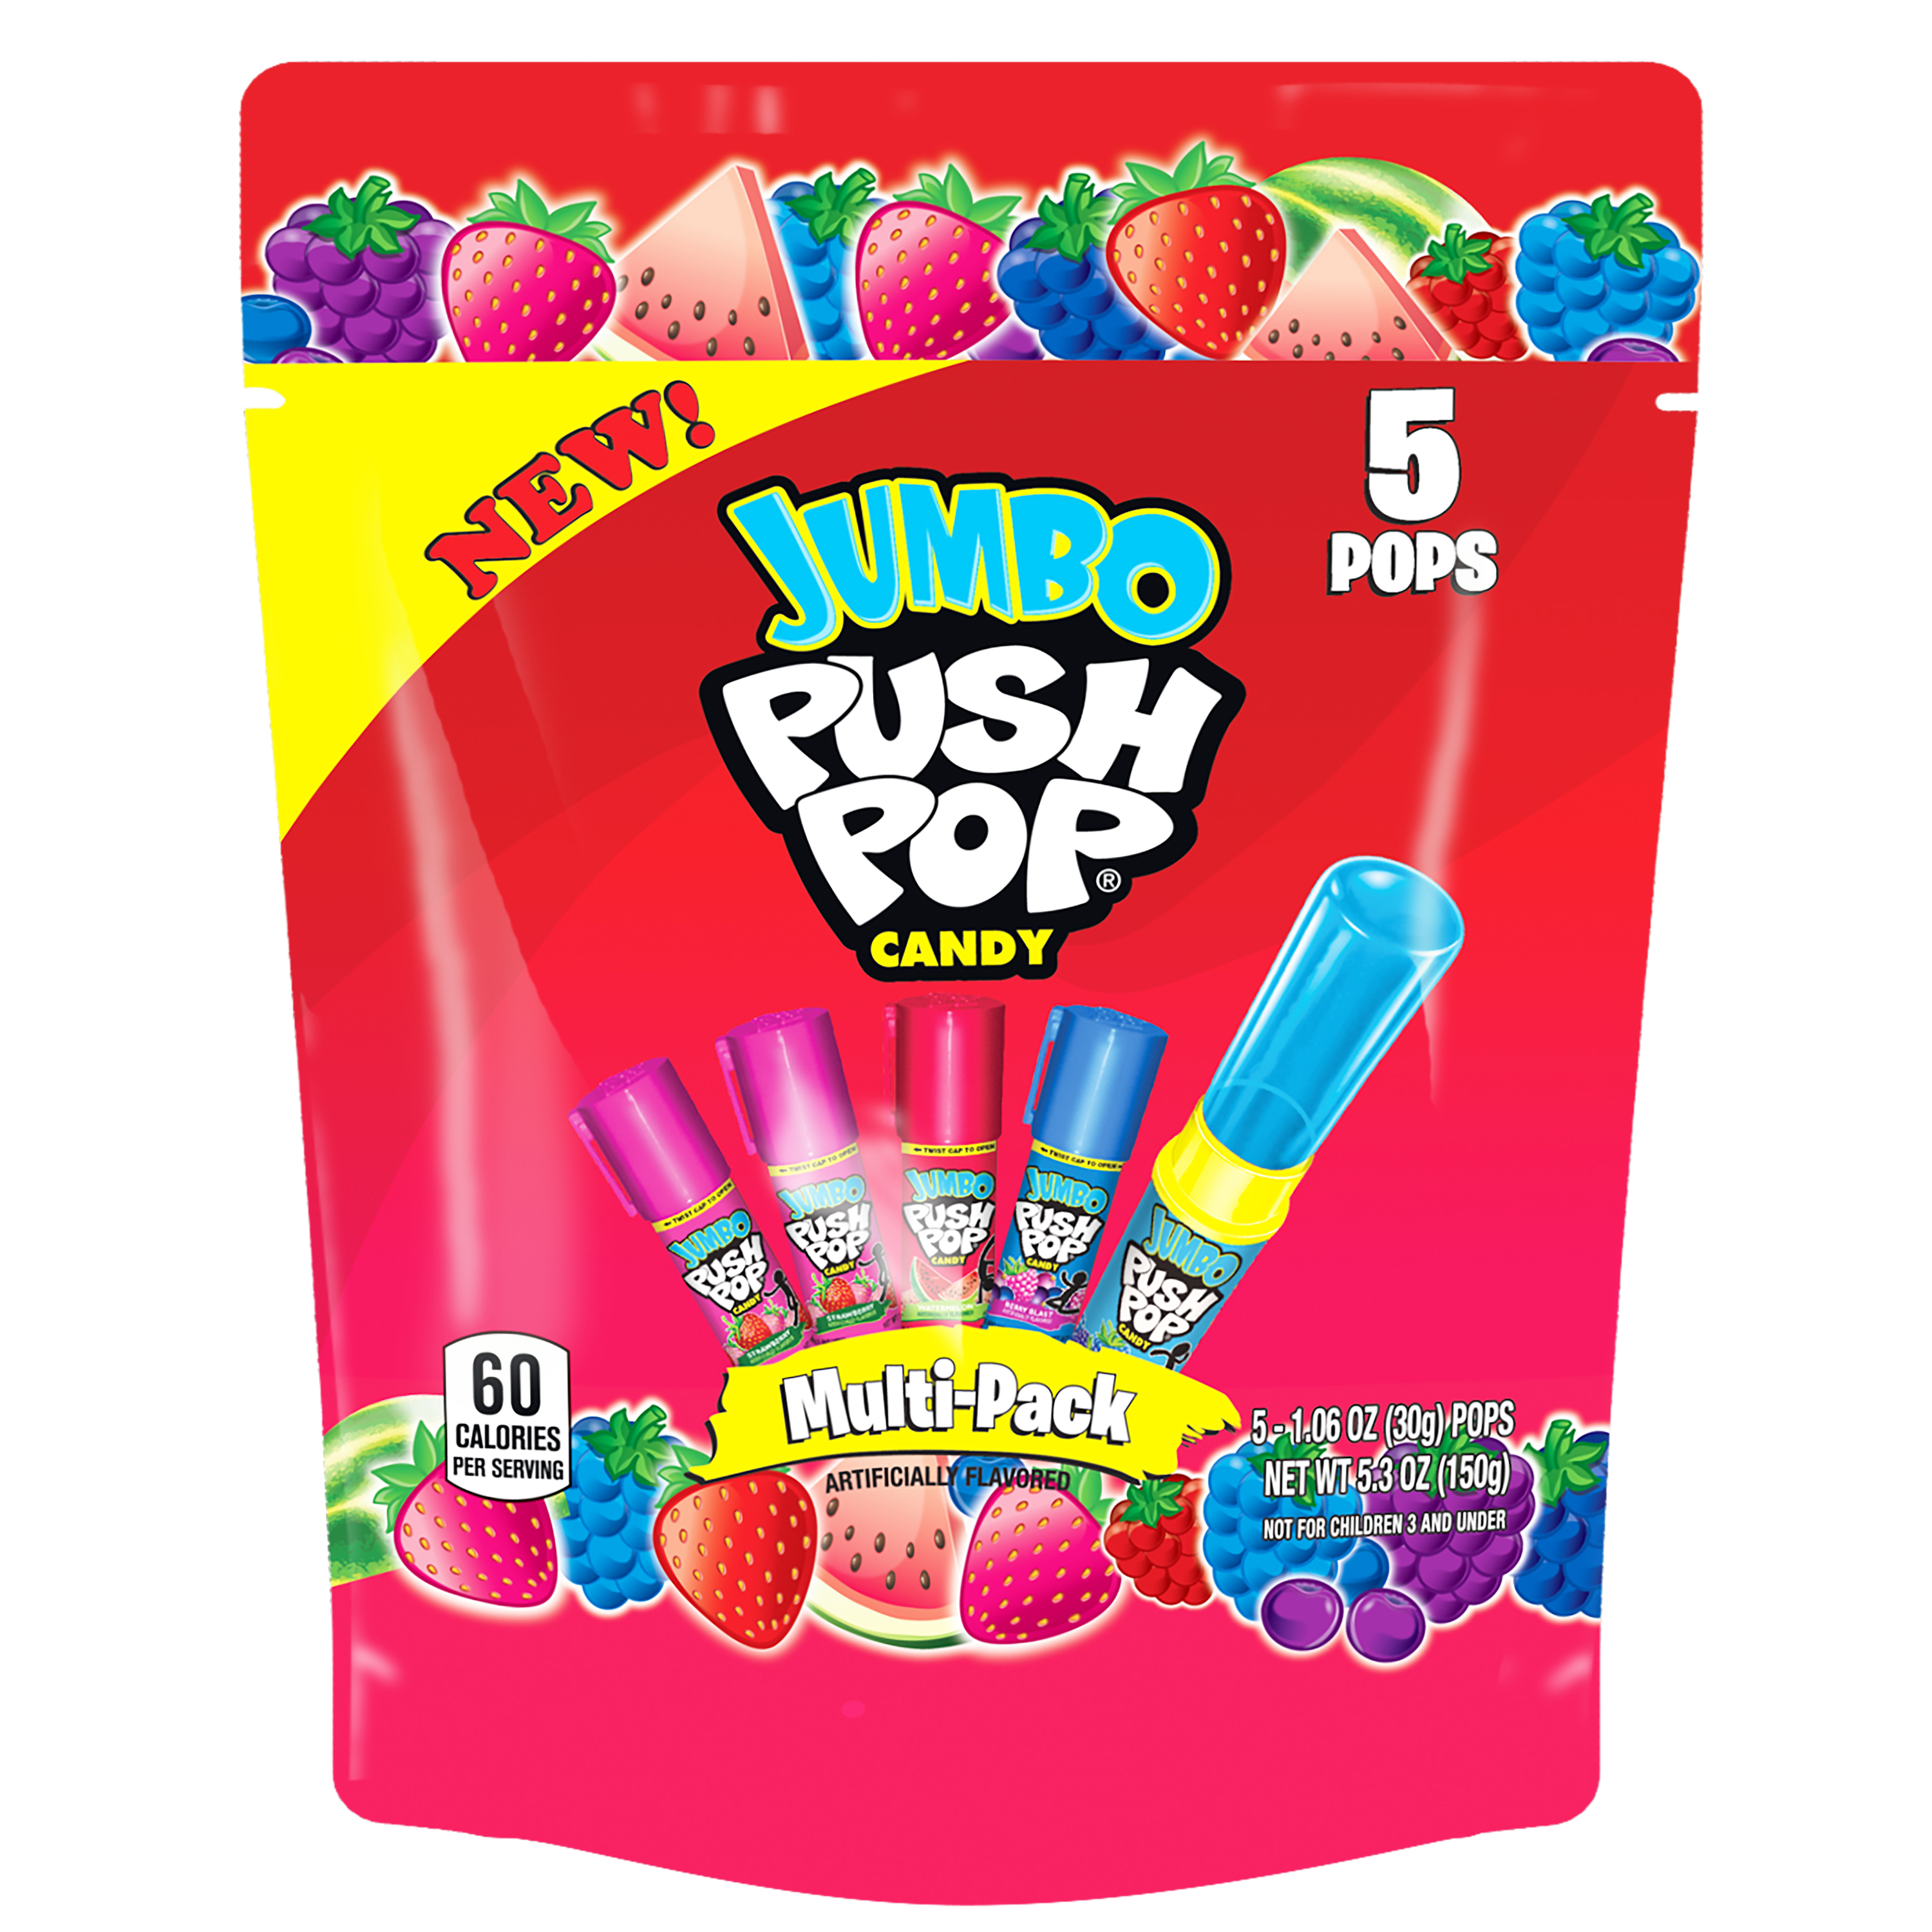 Jumbo Push Pop,Gluten-Free, Assorted Flavors Lollipops, 5.3 oz, 5 Count Bag - image 1 of 10